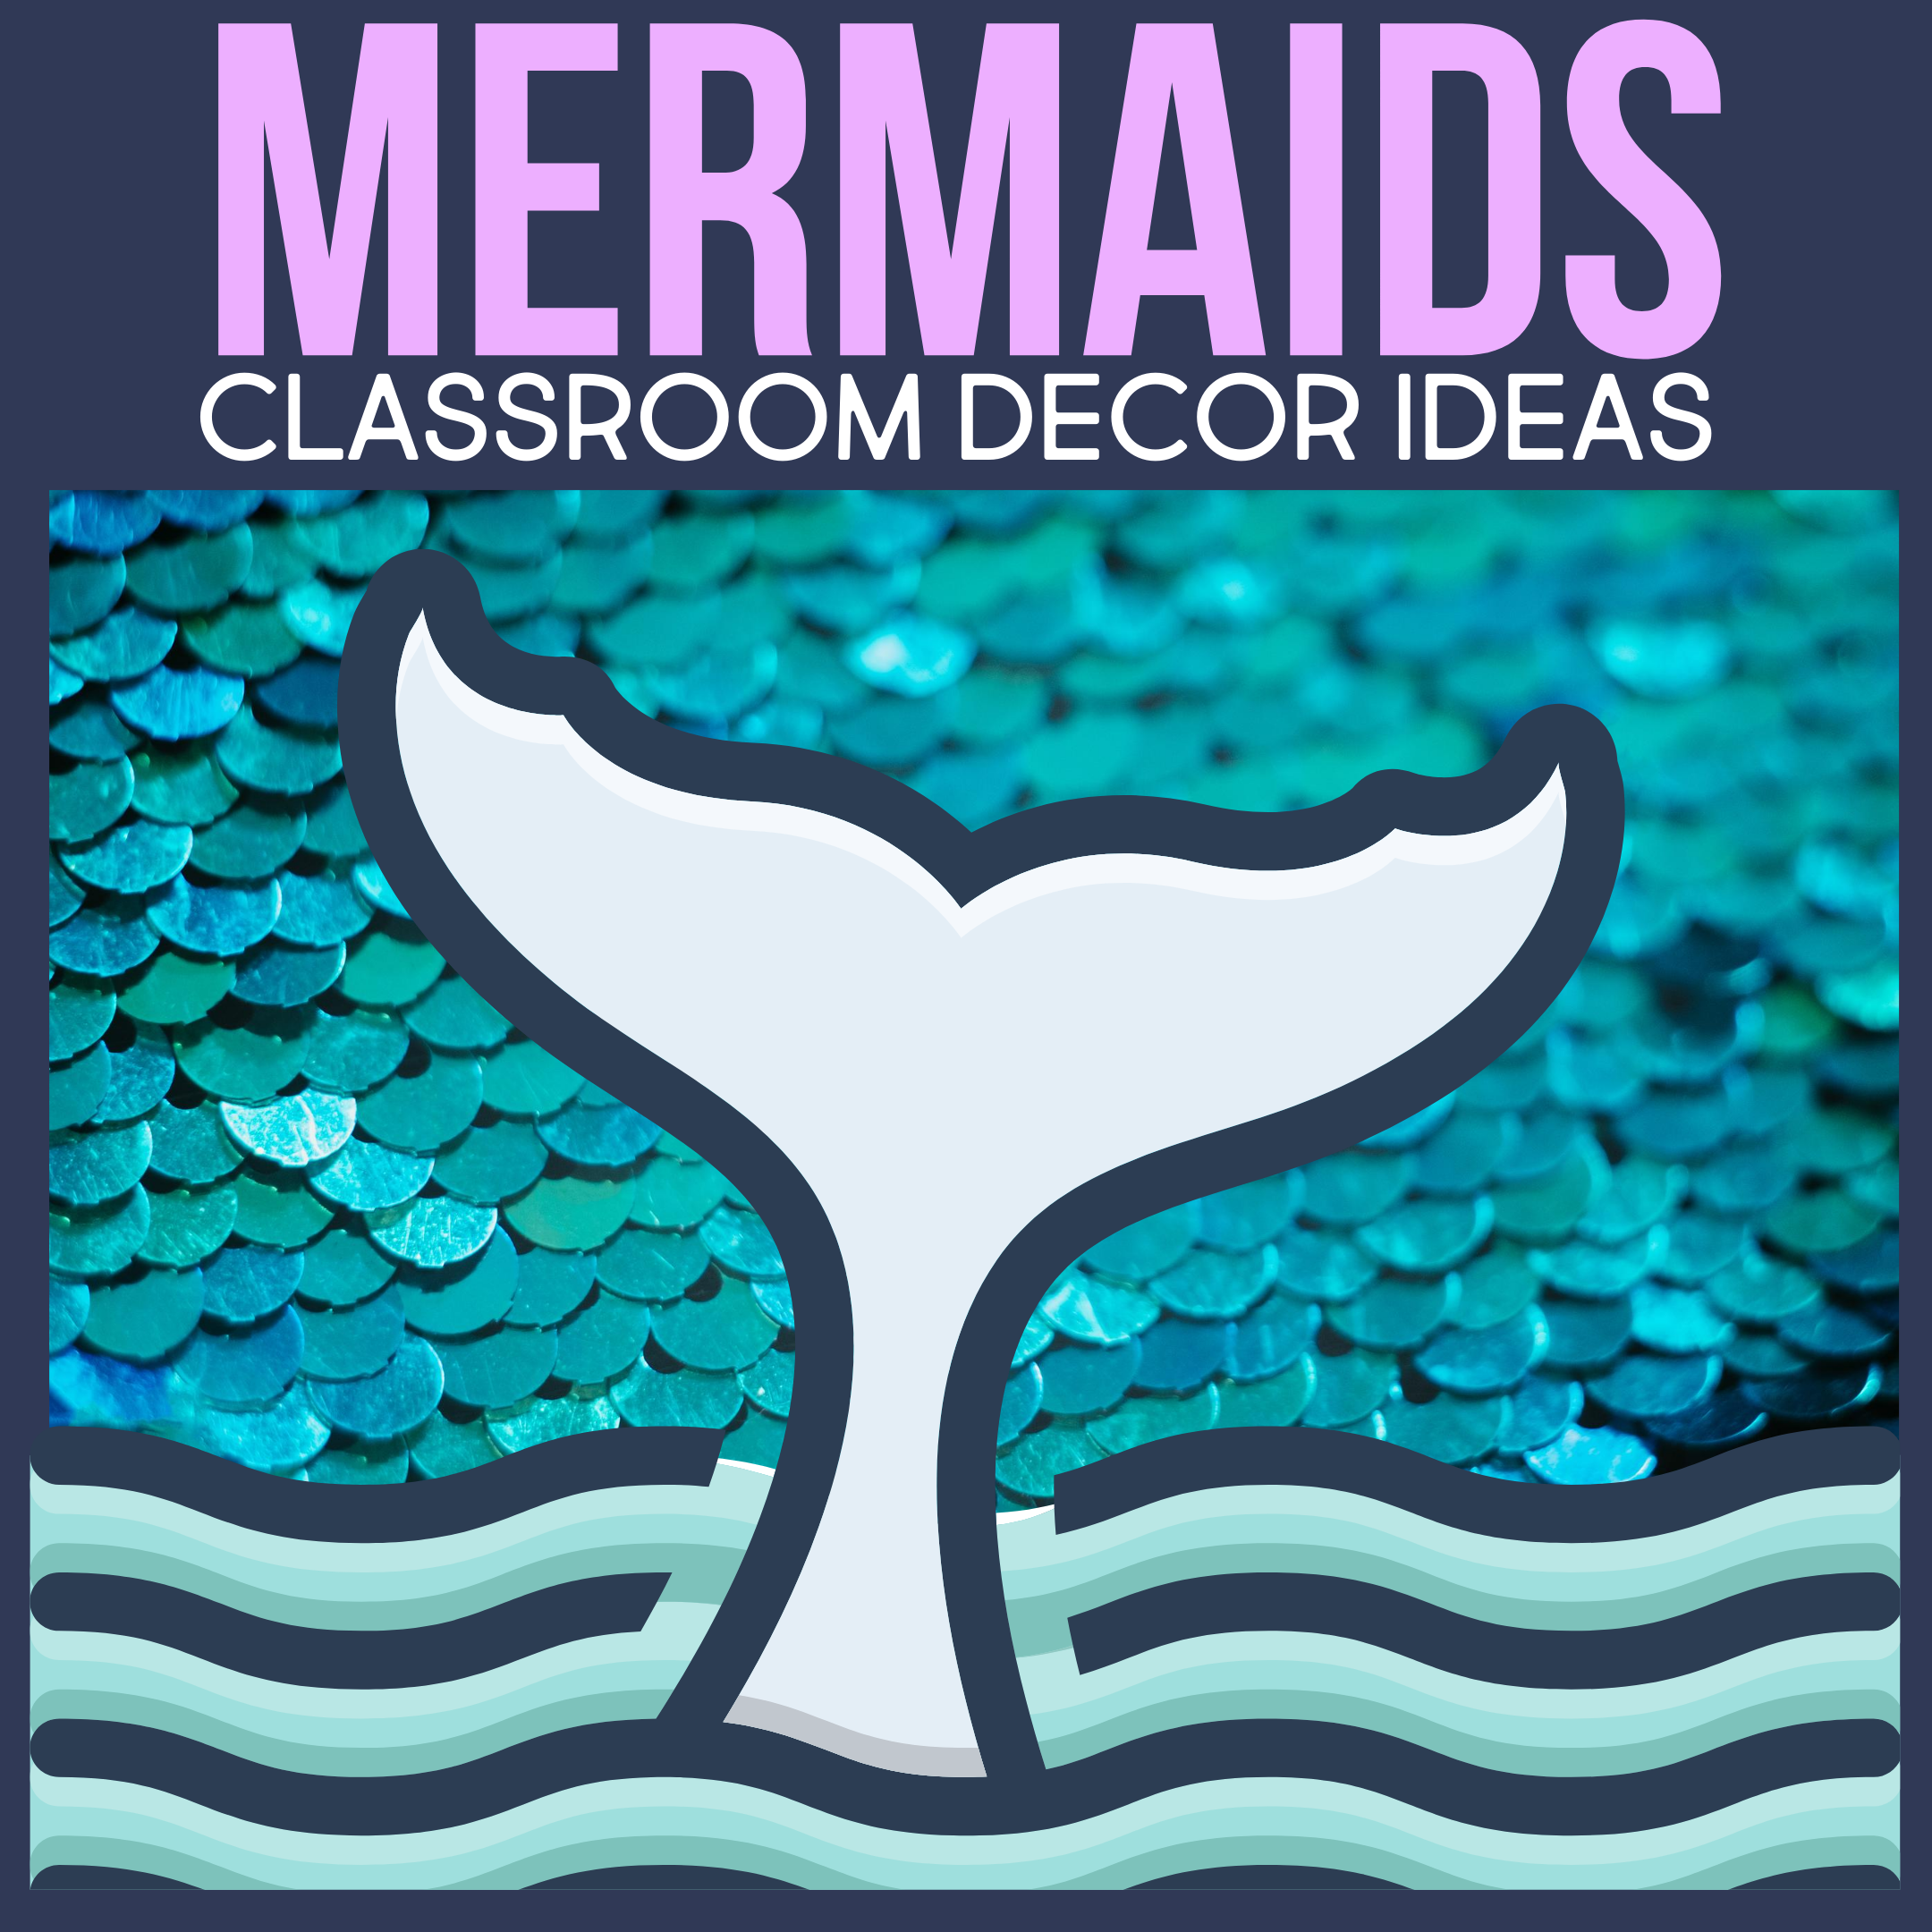 mermaids as a classroom decor theme for elementary teachers